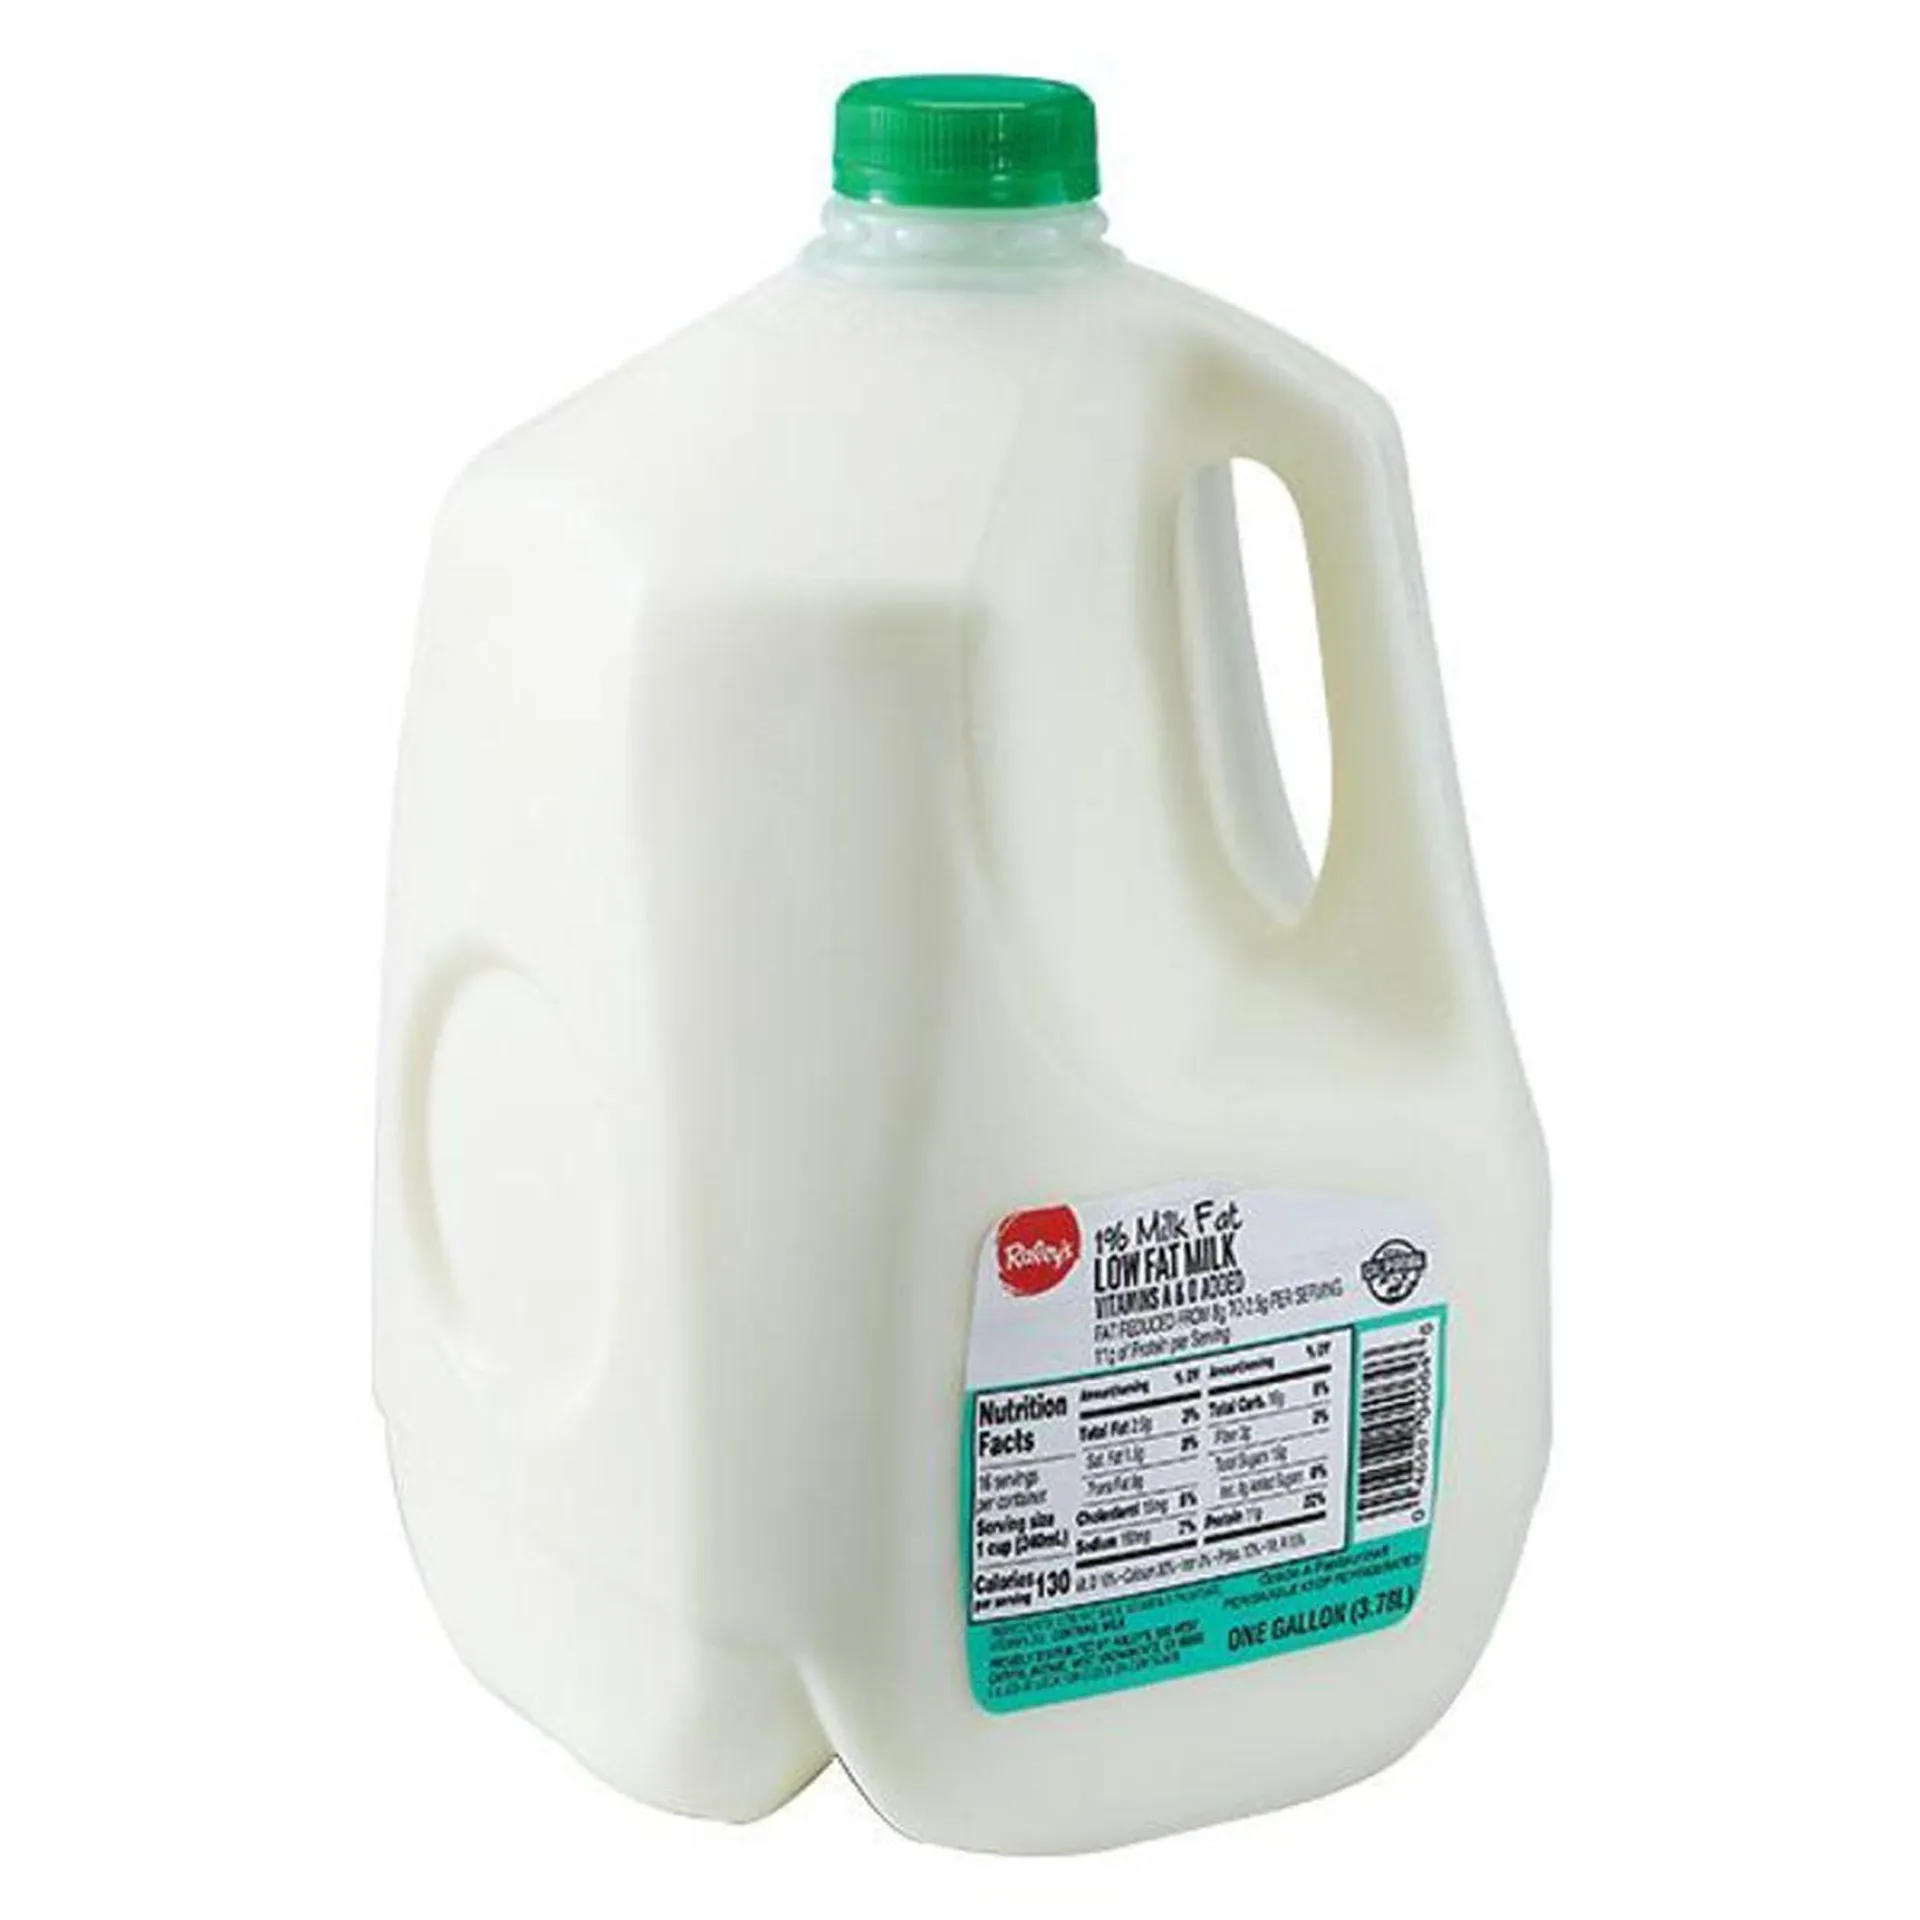 Raley's Low Fat Milk, 1% Milkfat, 1 Gallon